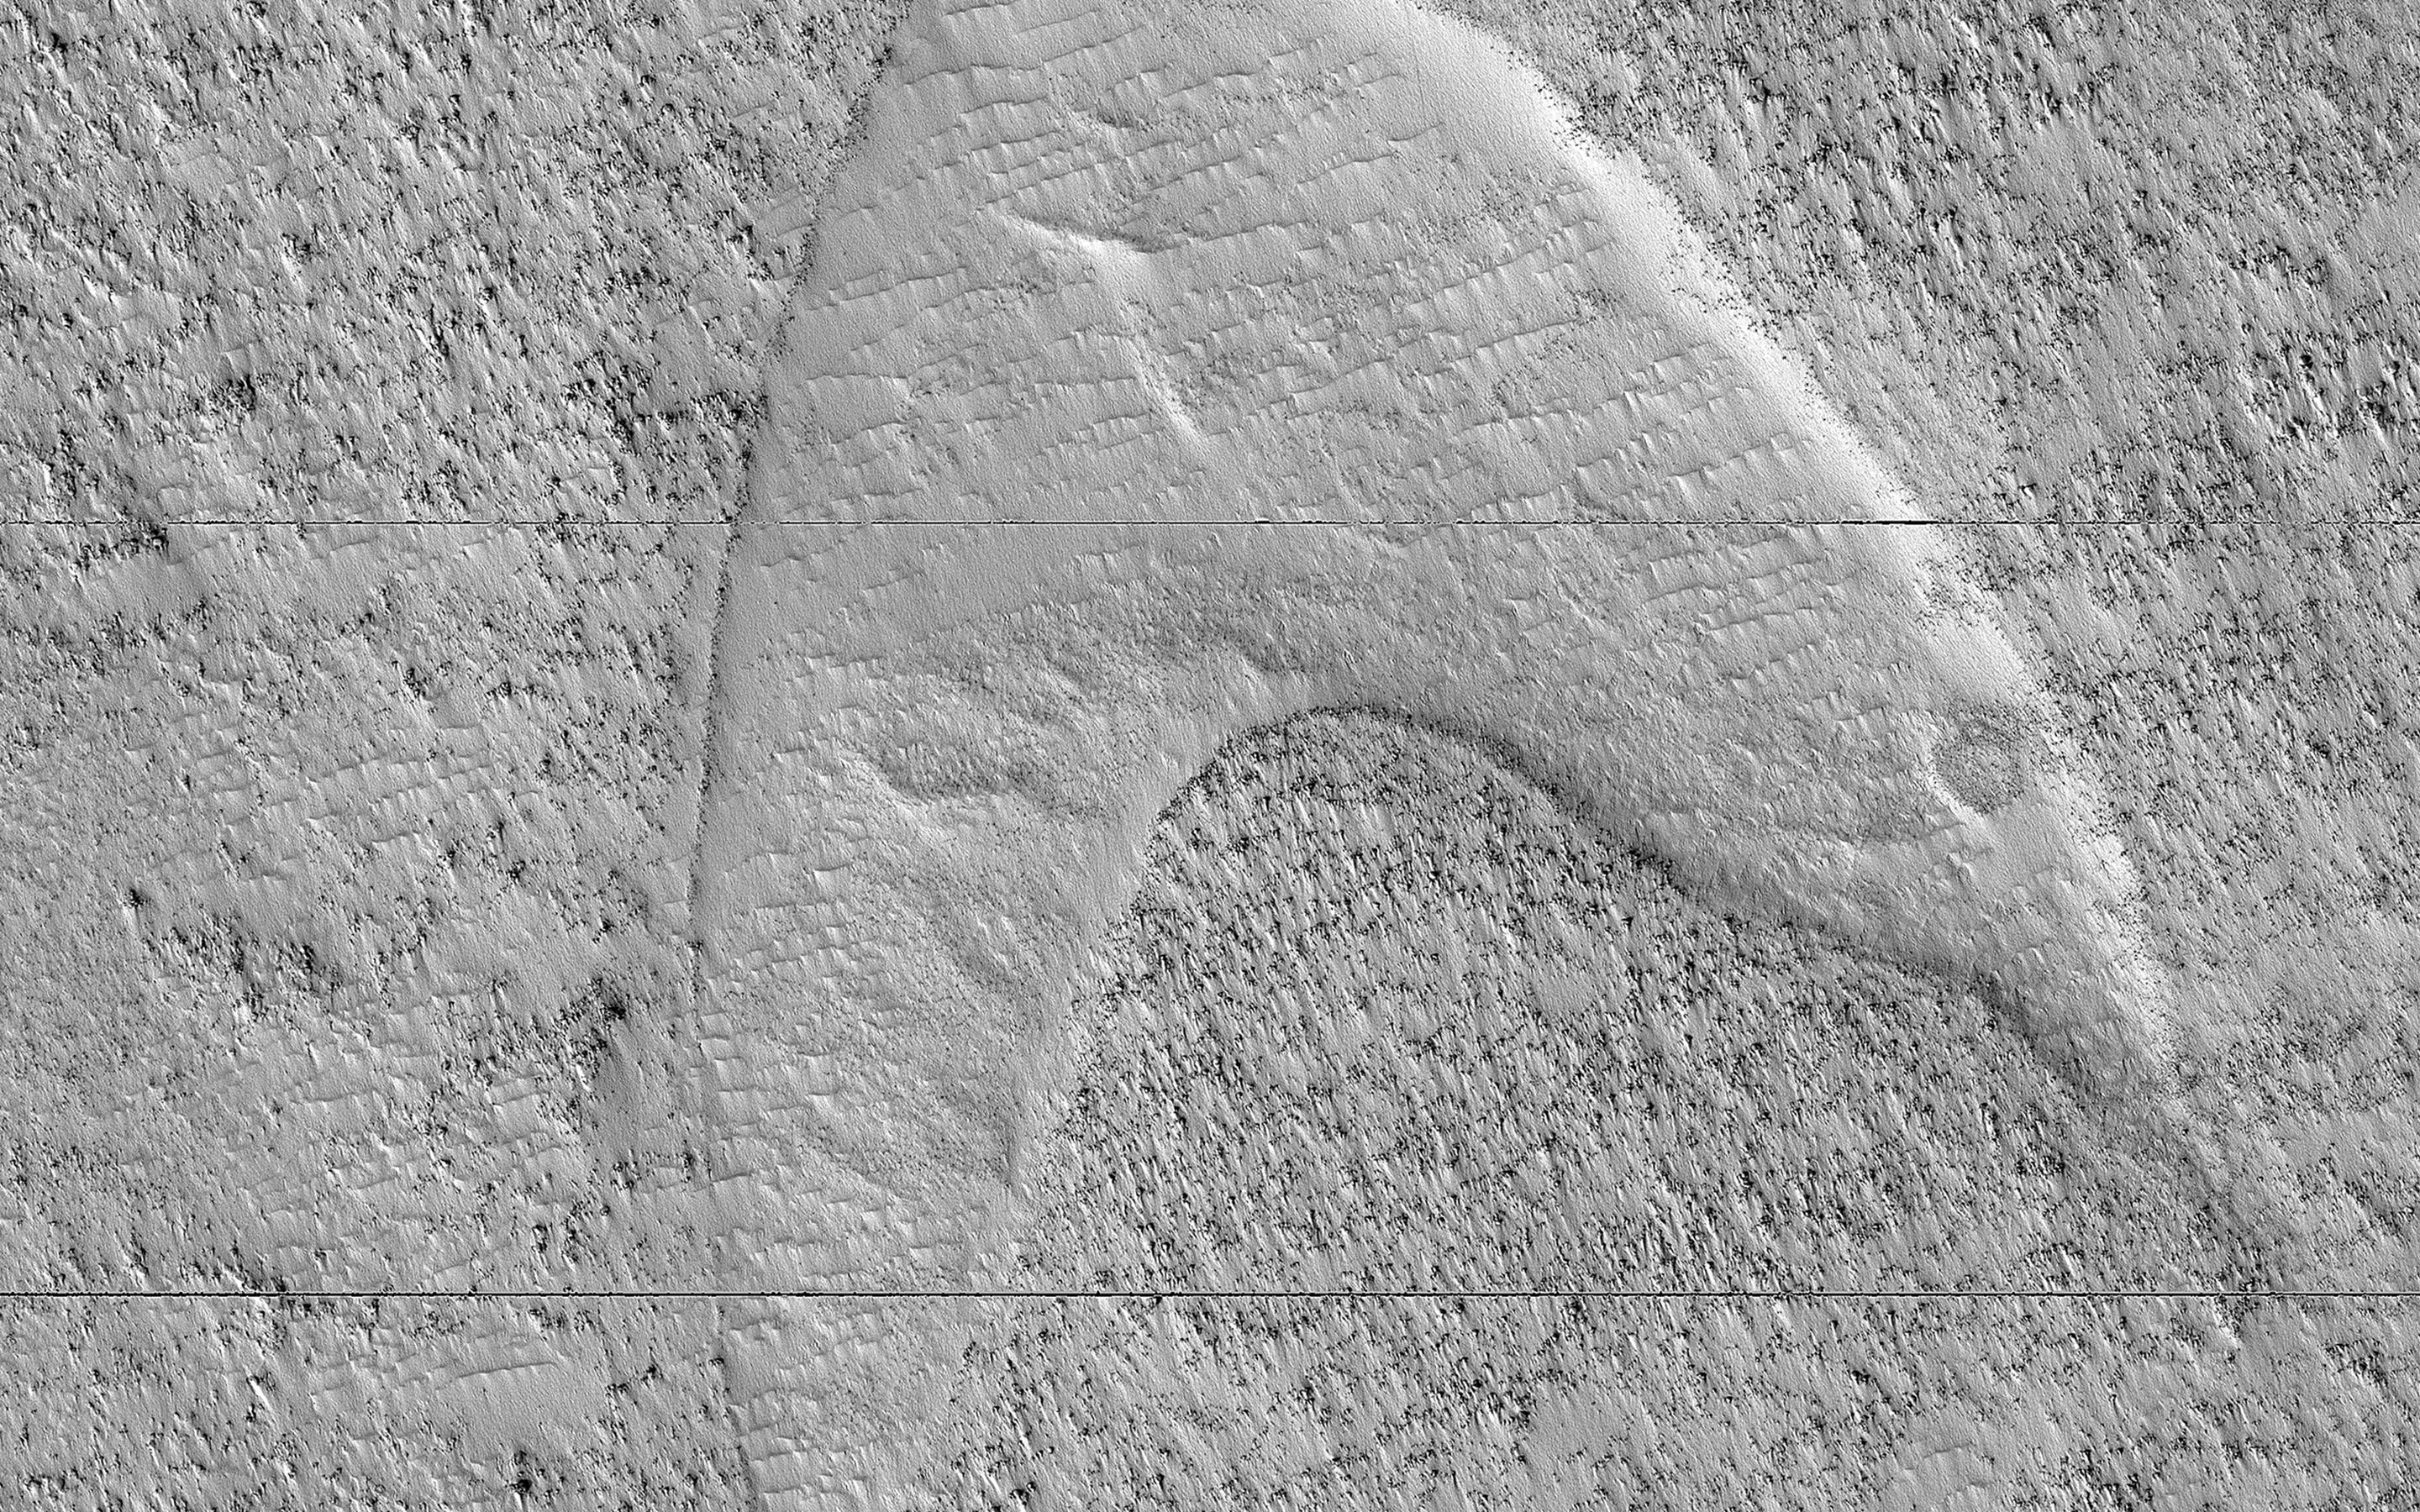 L’empreinte d’une ancienne dune de sable figée dans une plaine de lave sur Mars vue par la sonde Mars Reconnaissance Orbiter (MRO). © Nasa/JPL-Caltech/University of Arizona